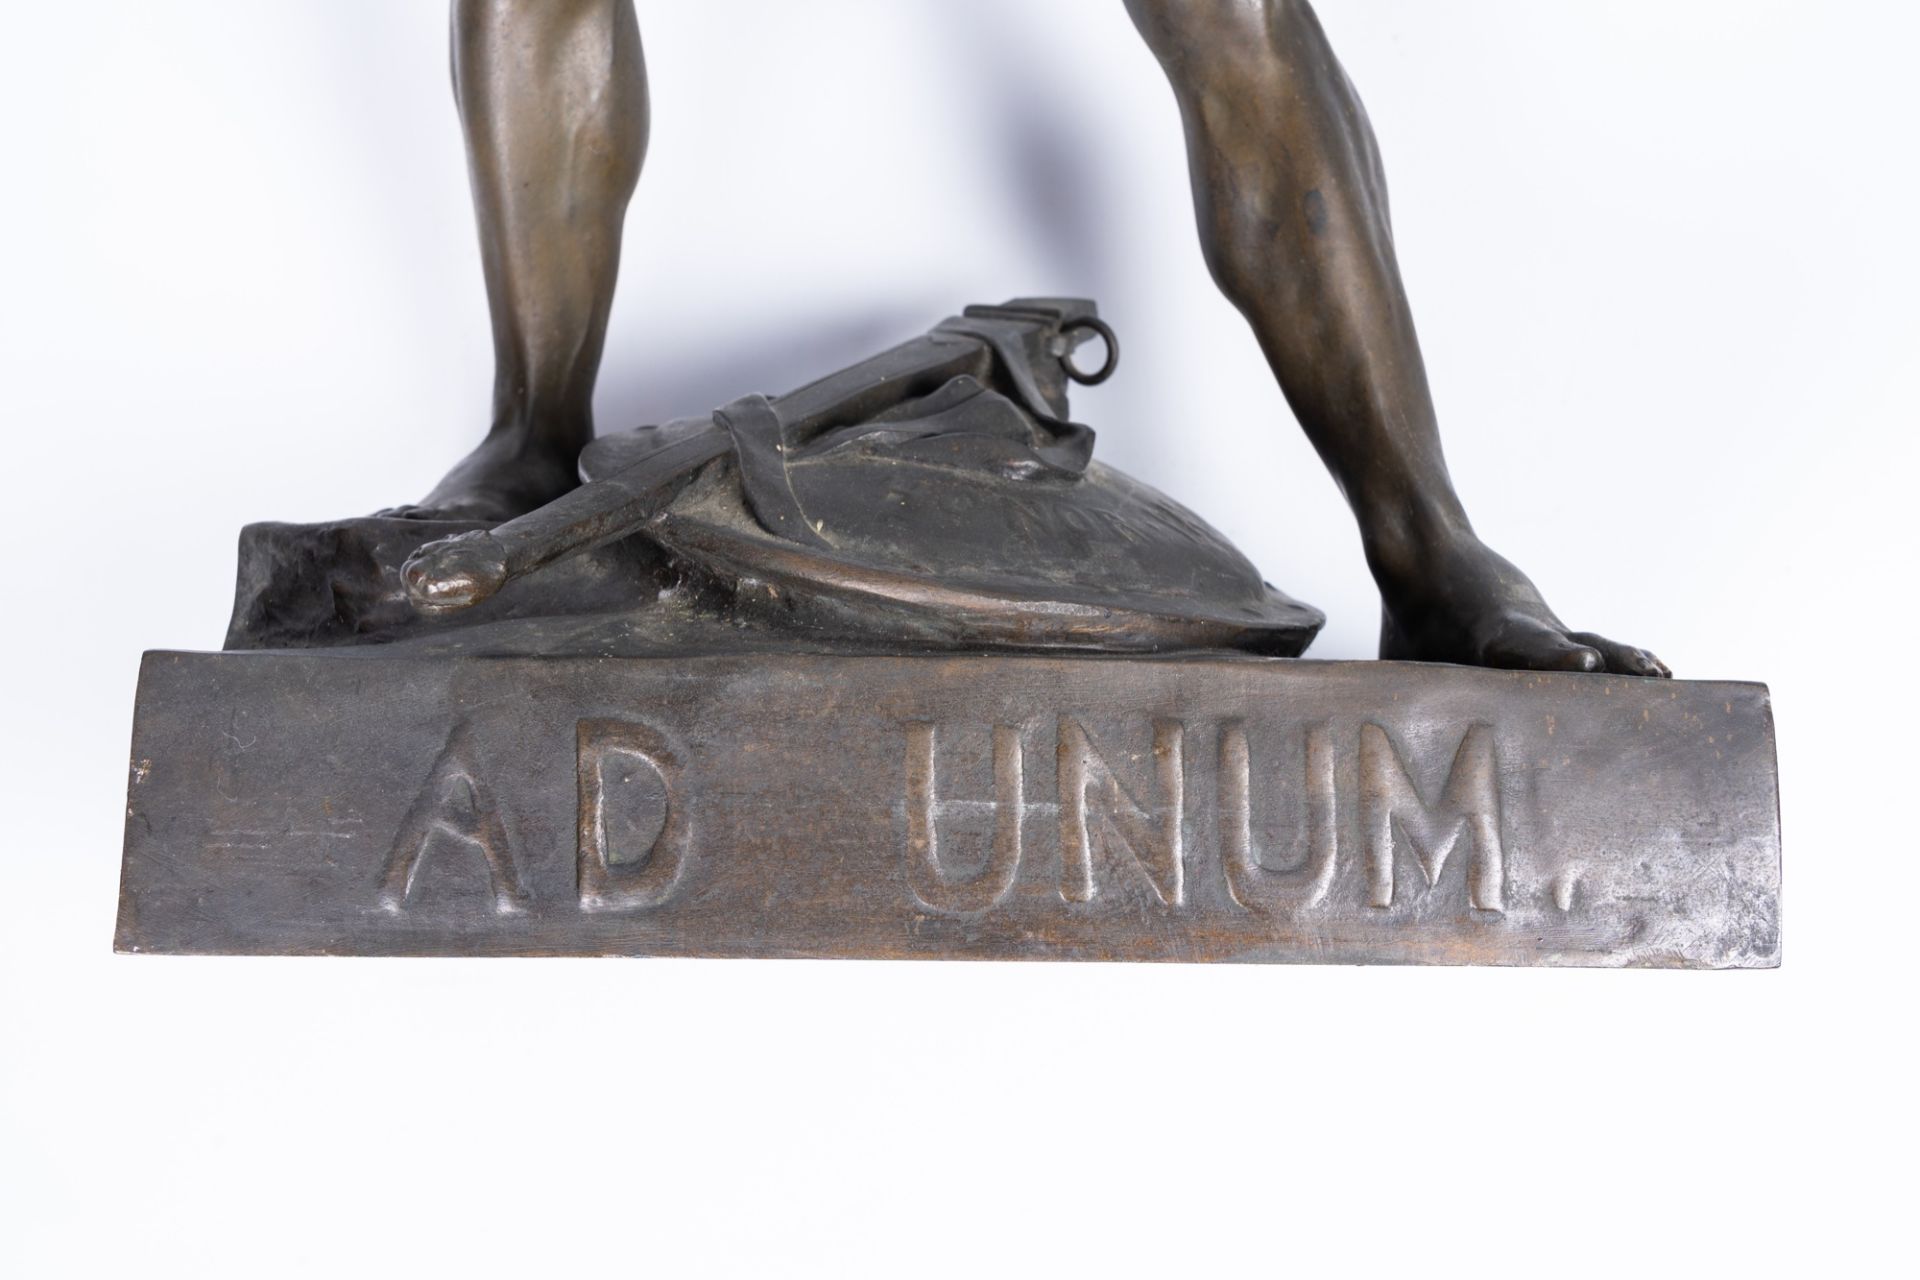 Emile Louis Picault (1833-1915): 'Ad Unum' (Honor Patria), patinated bronze - Image 7 of 10